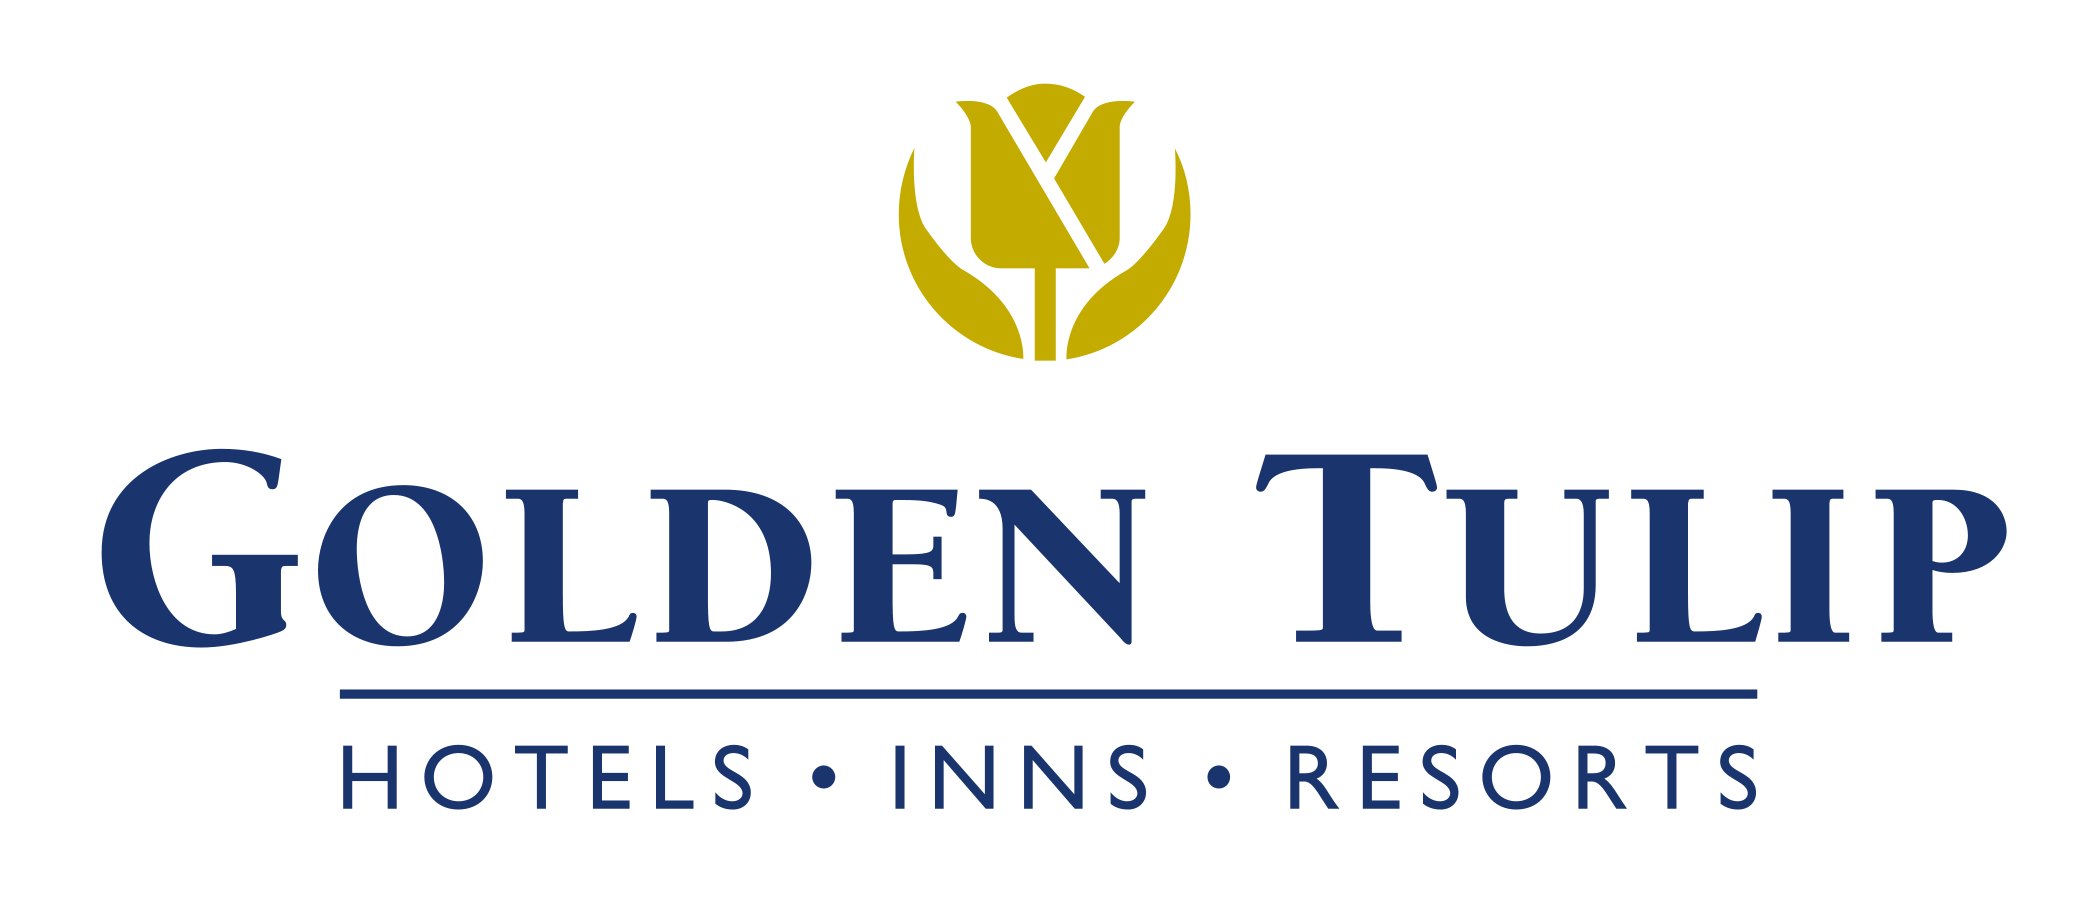 Golden Tulip  Hotels, Inns & Resorts